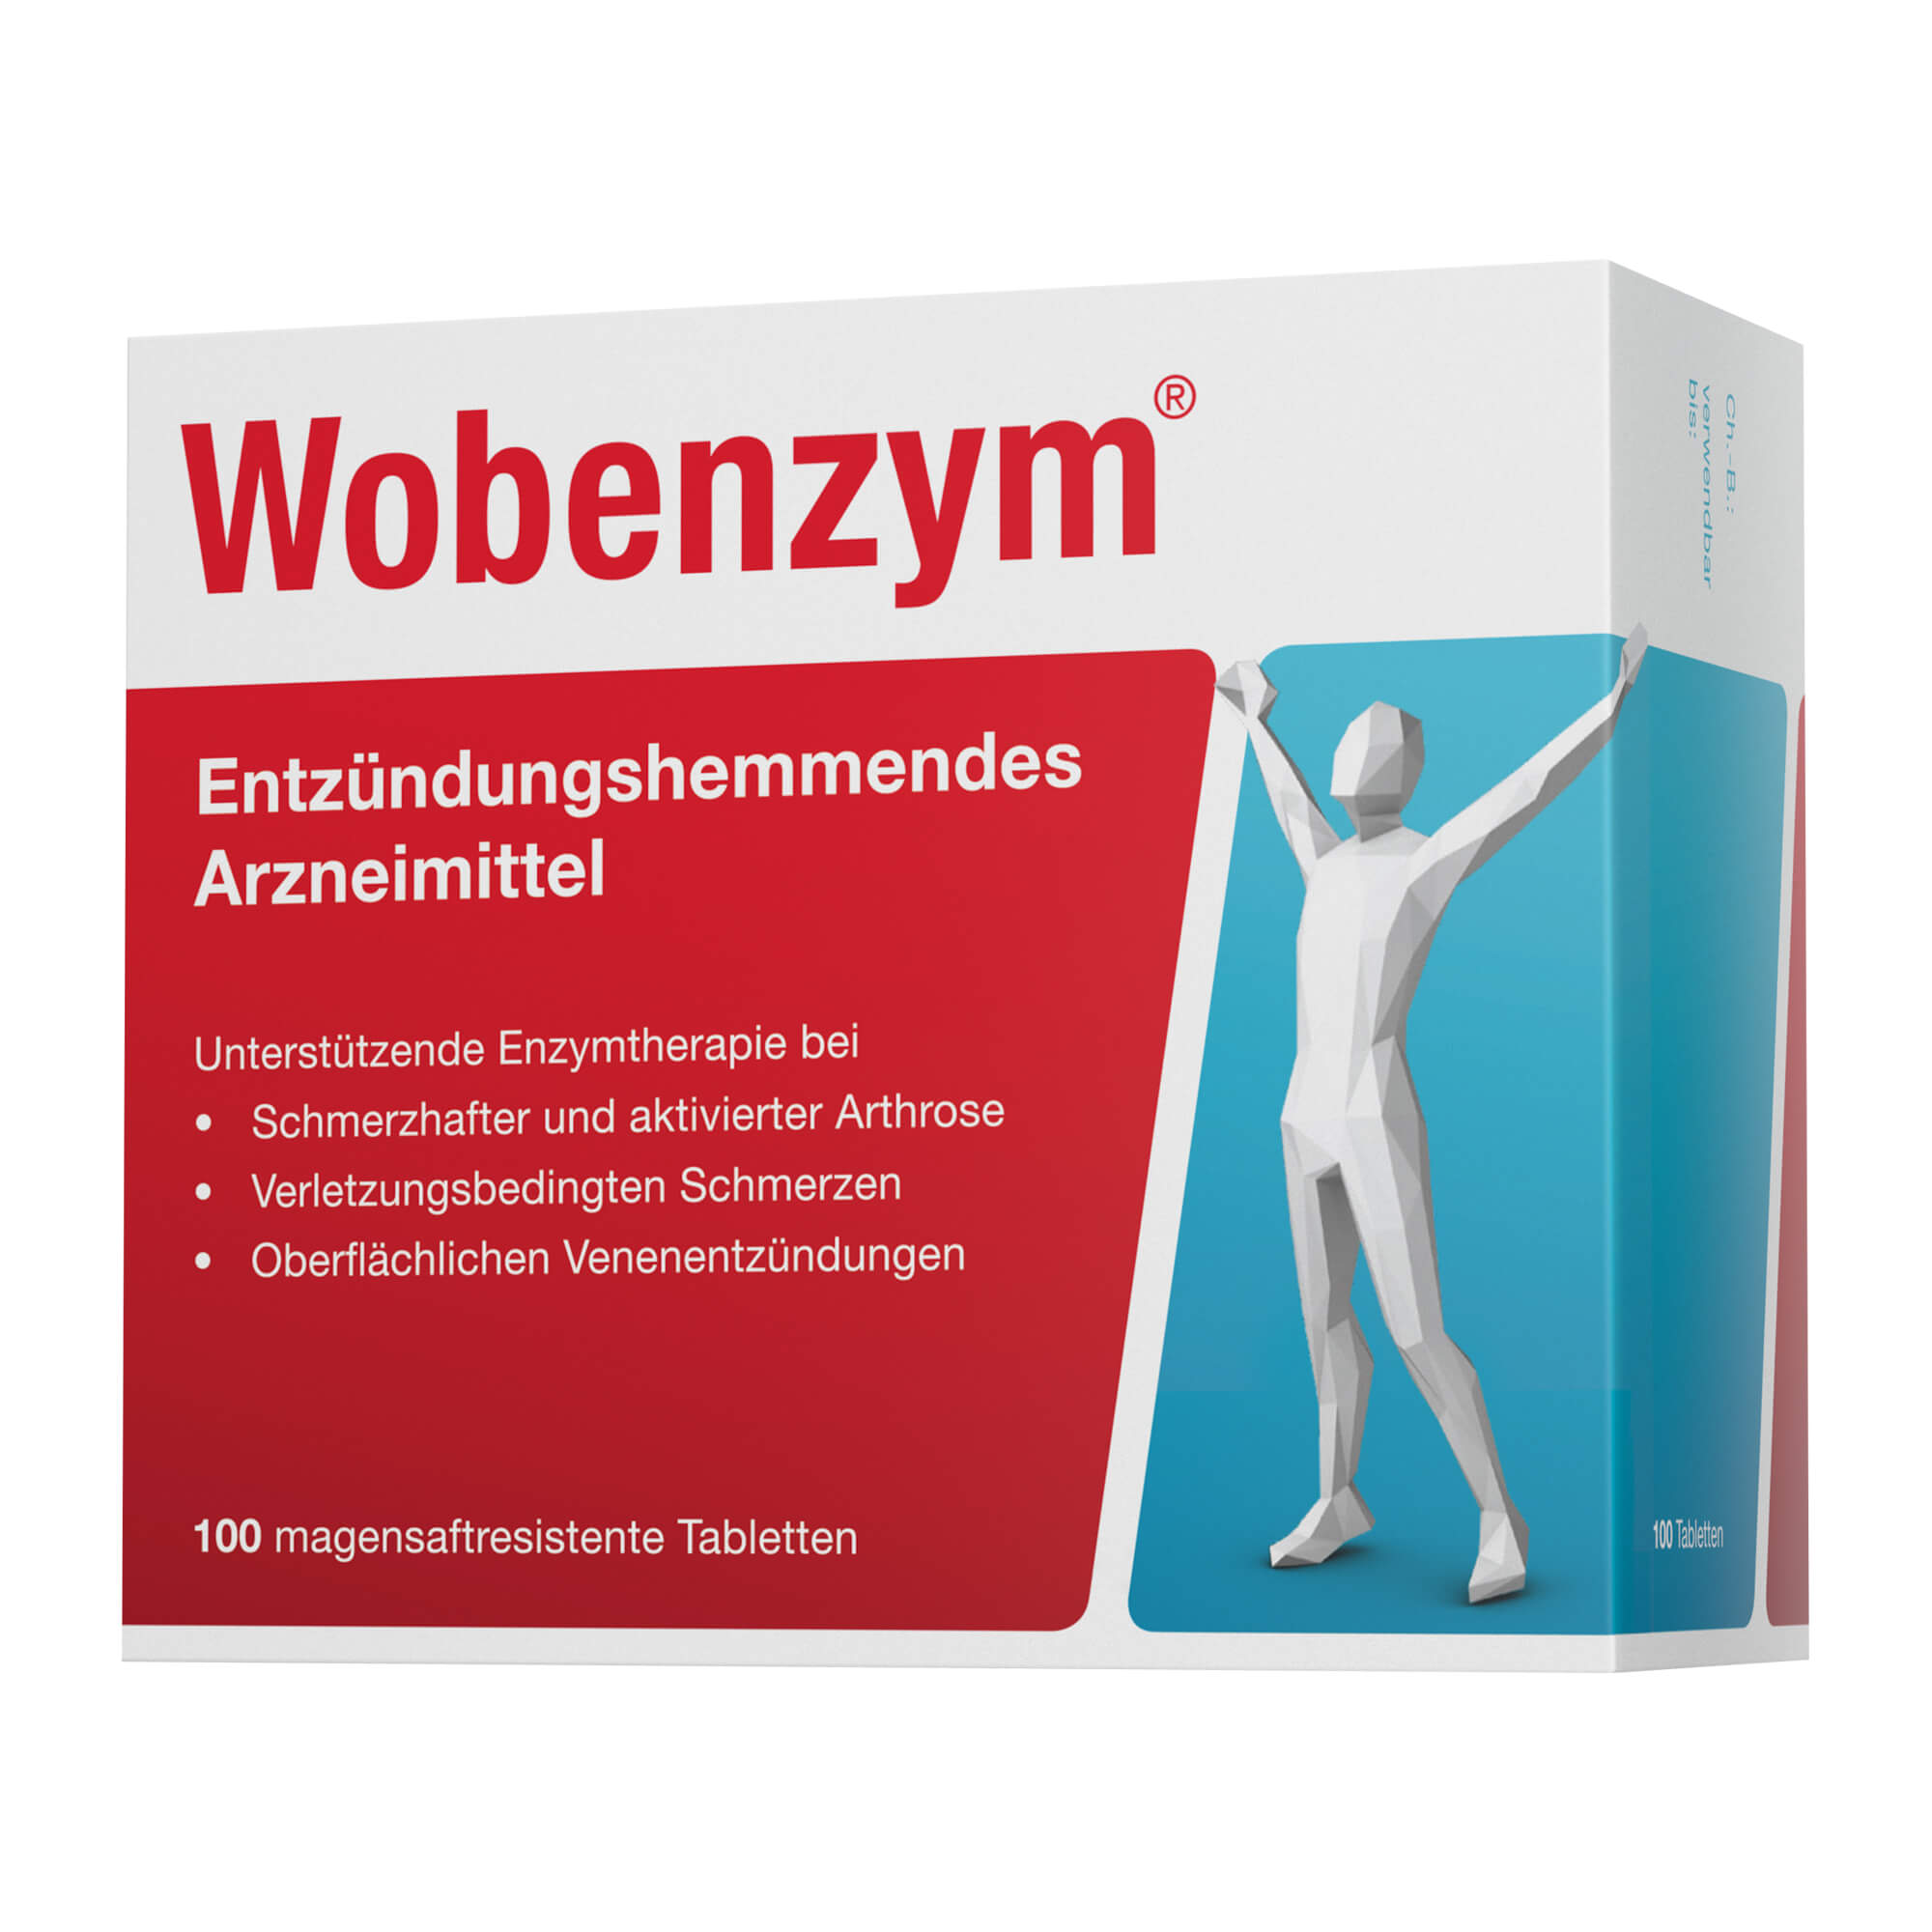 Entzündungshemmendes Arzneimittel zur unterstützenden Enzymtherapie bei Arthrose, Verletzungen und Entzündungen.